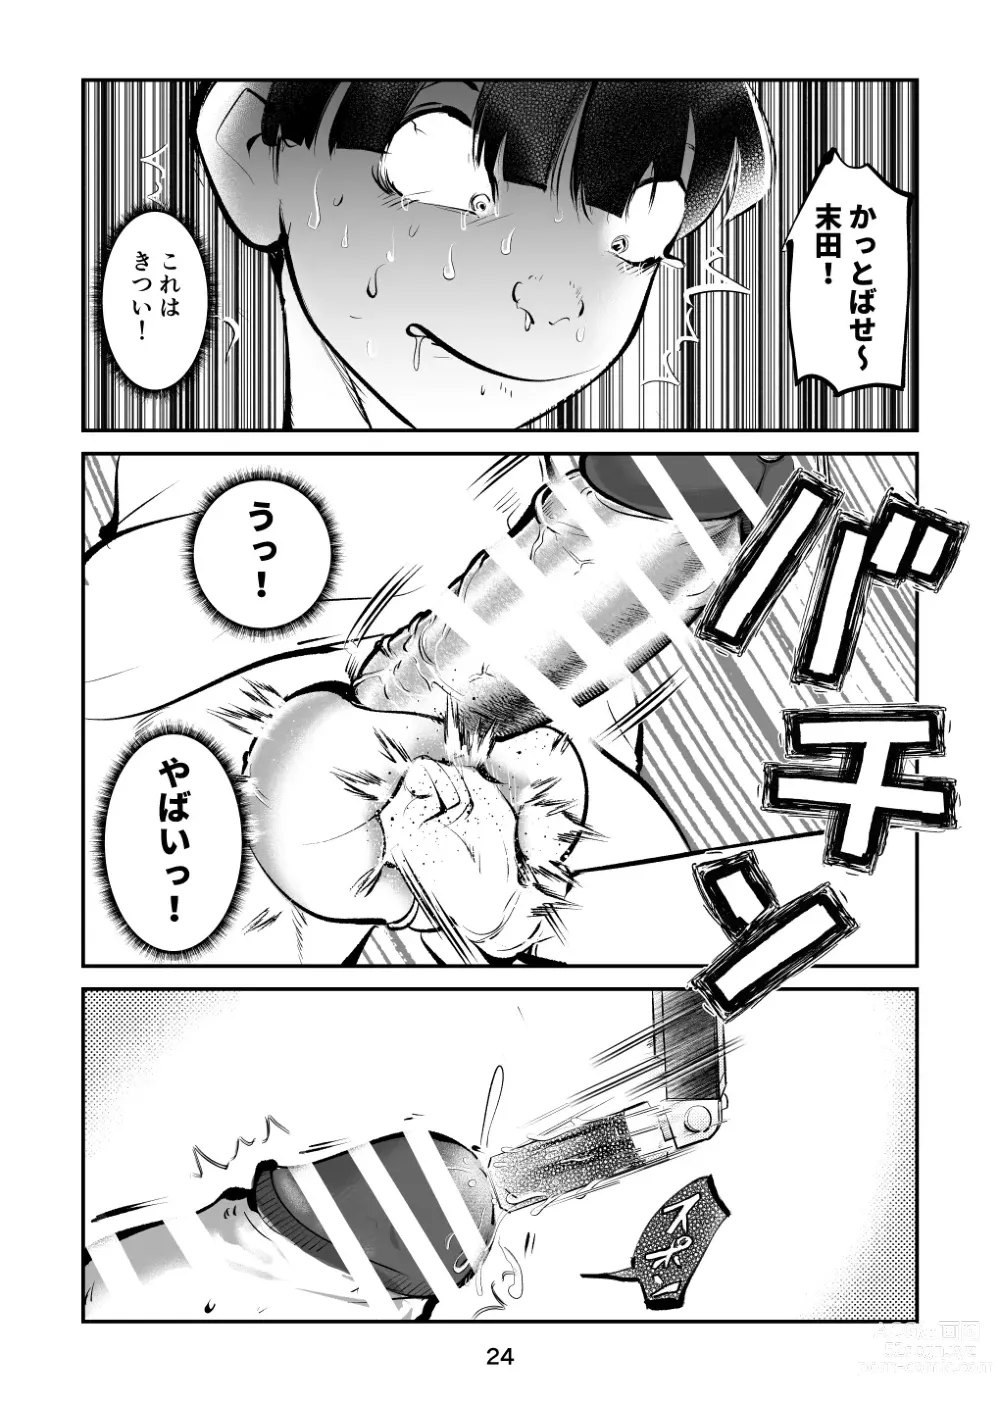 Page 24 of doujinshi Kinkeri Cheer Girl VS Tosatsuma Shakai Hito Cheer Girl-hen